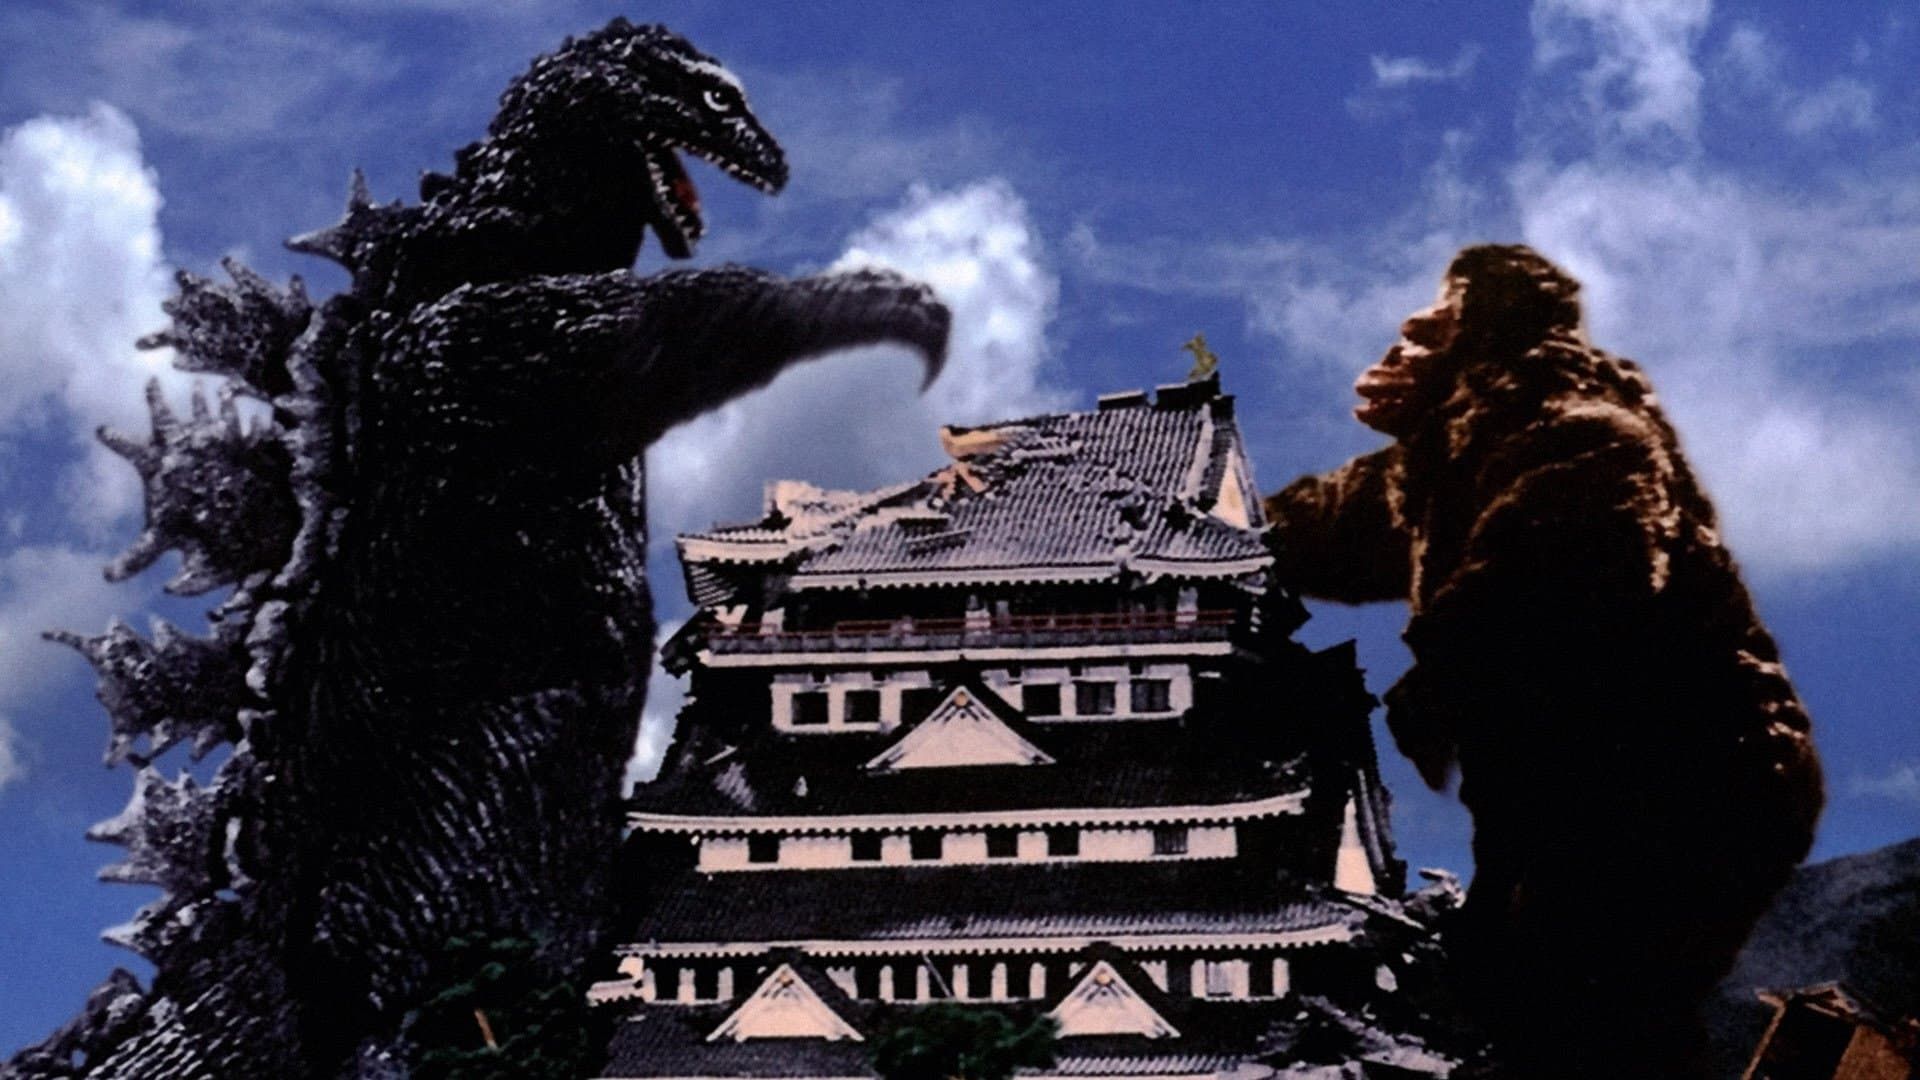 King Kong vs. Godzilla background